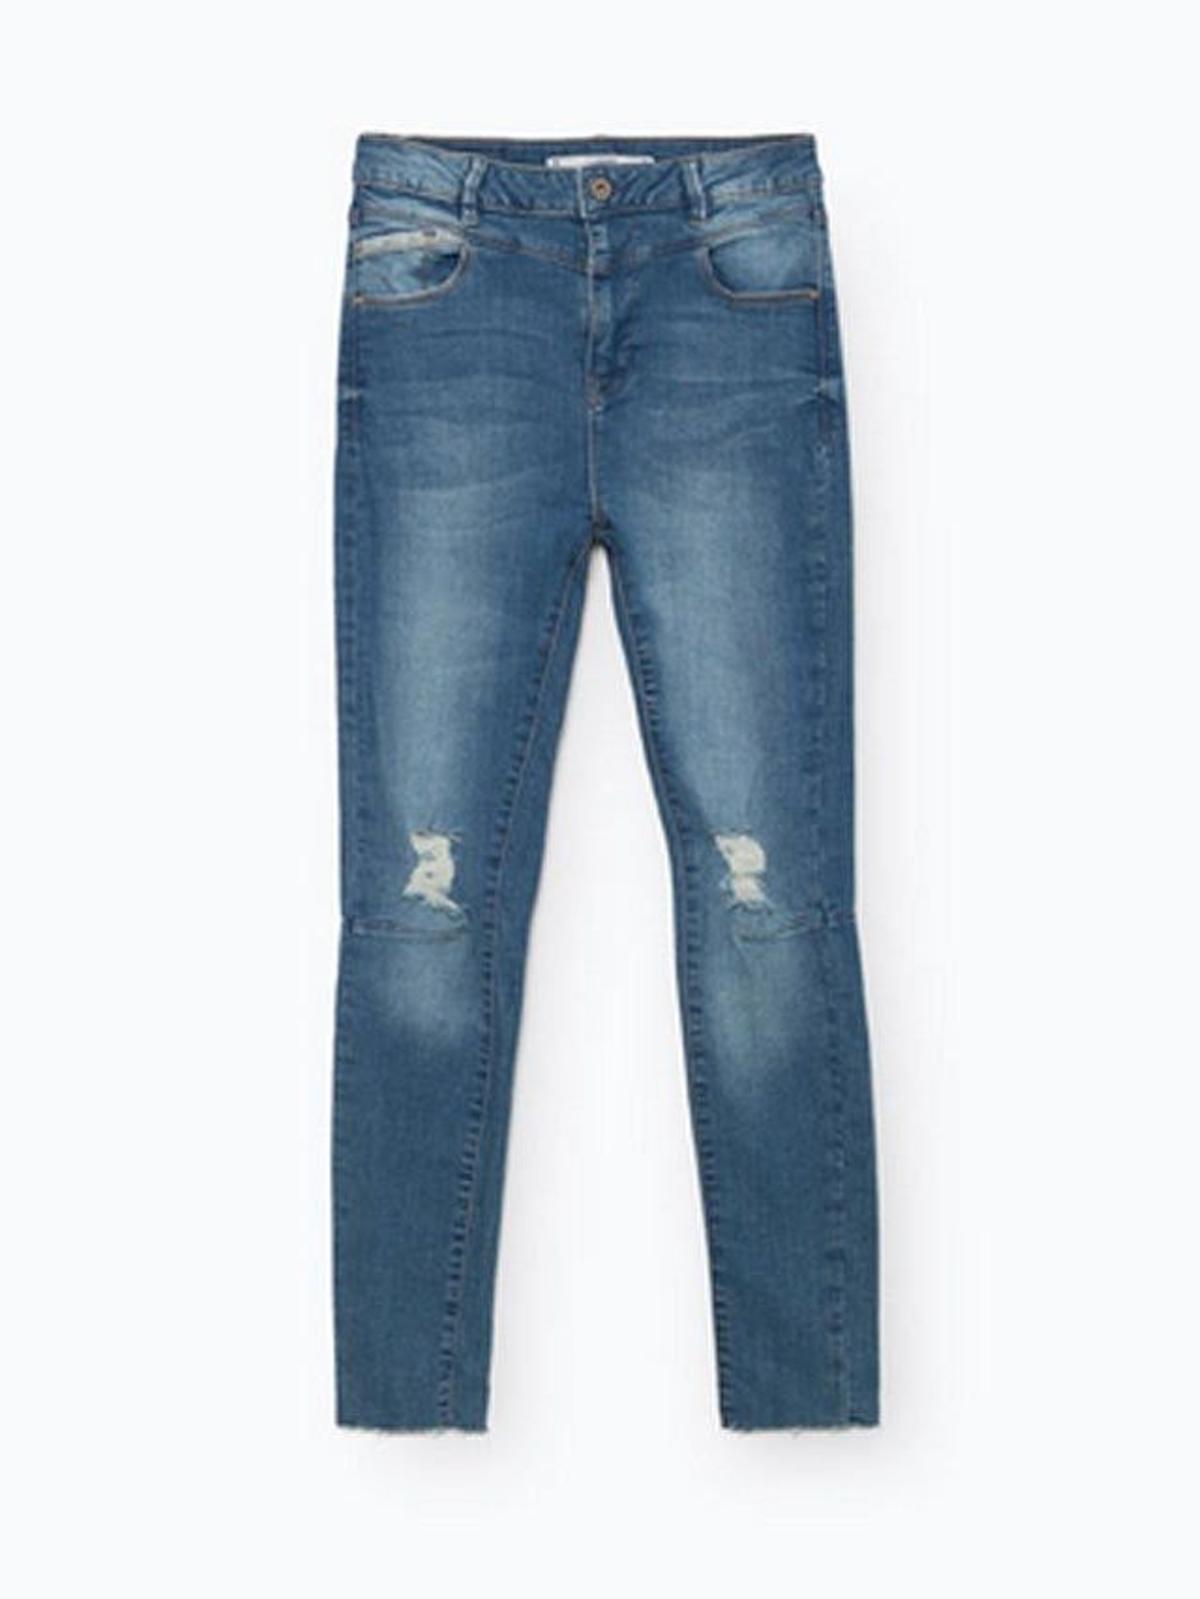 10. Jeans de Lefties